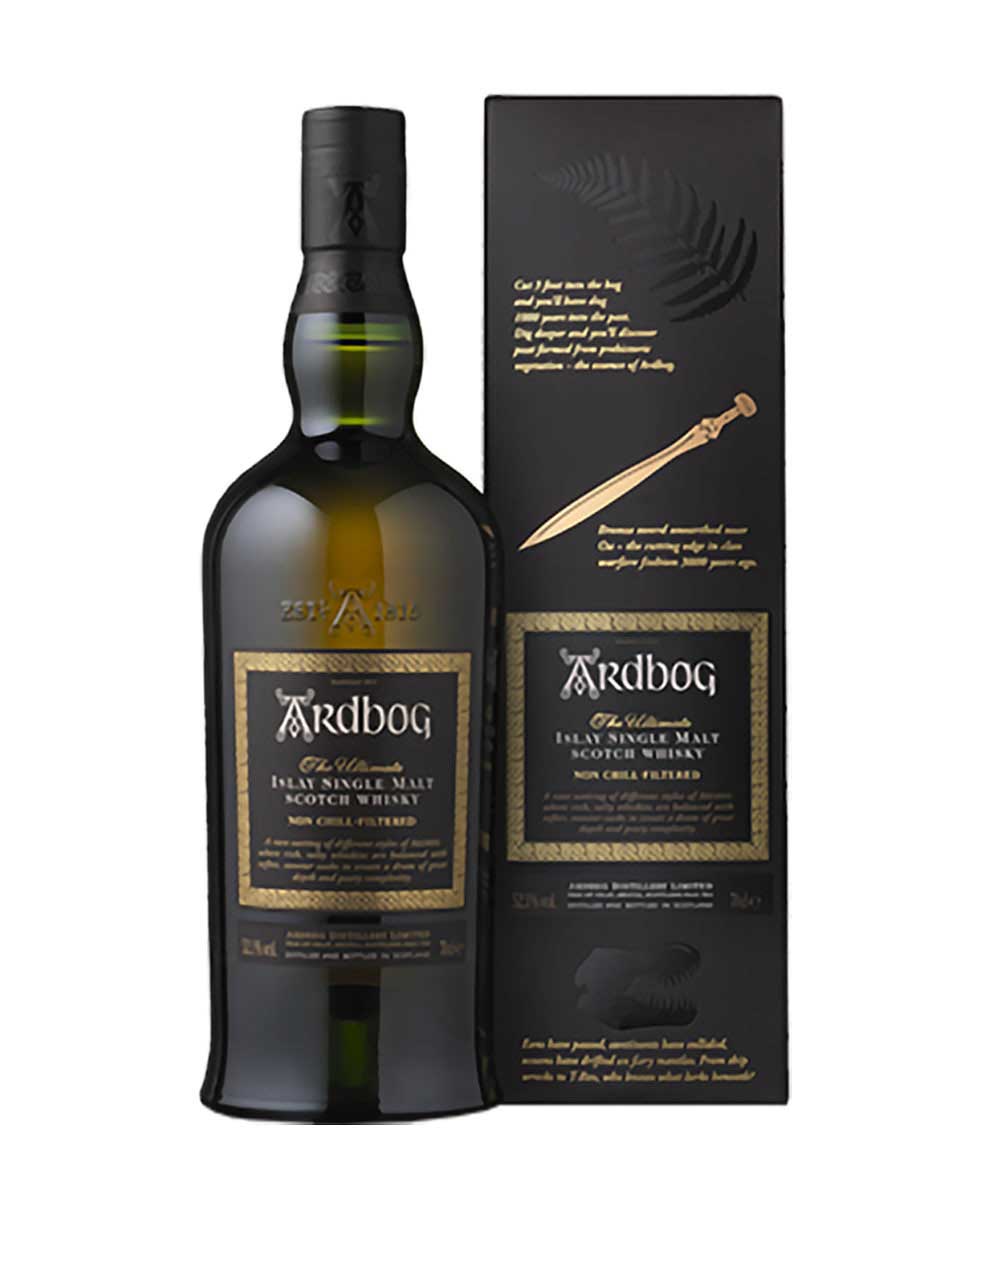 Ardbeg Ardbog Single Malt Scotch Whisky